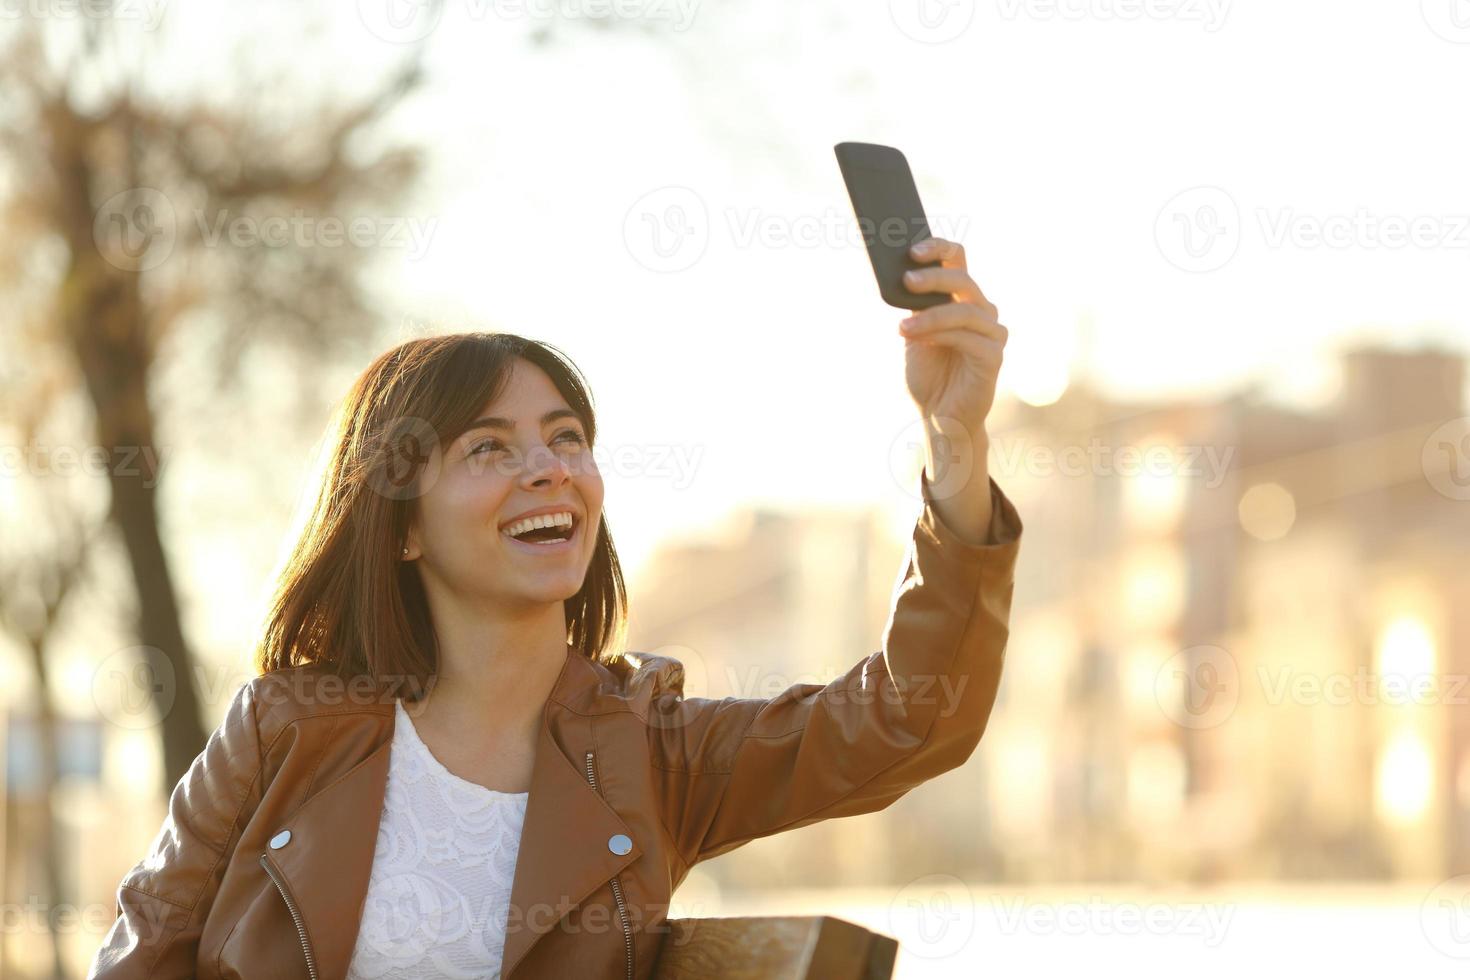 Frau, die selfie Foto mit einem smarphone im Winter nimmt